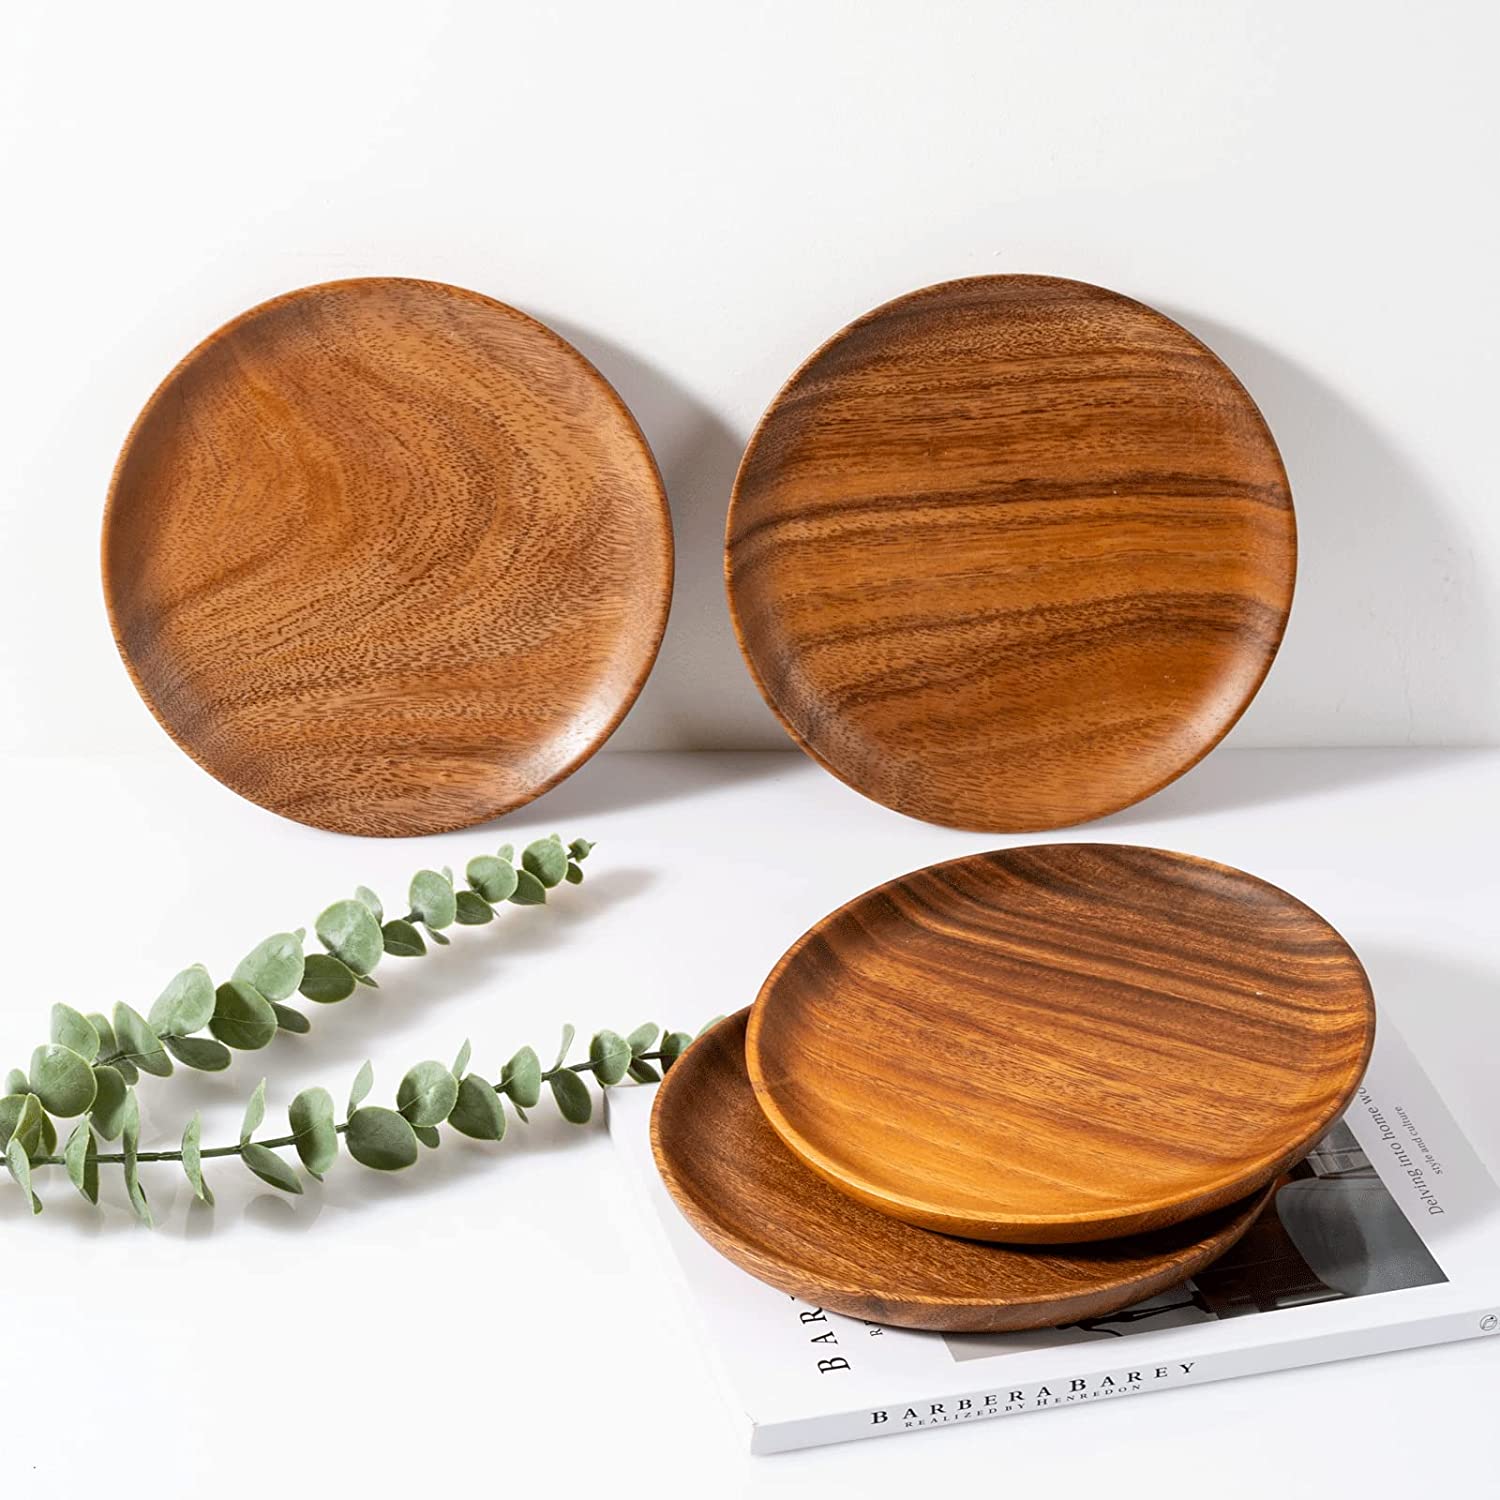 Wooden Dinner Plates